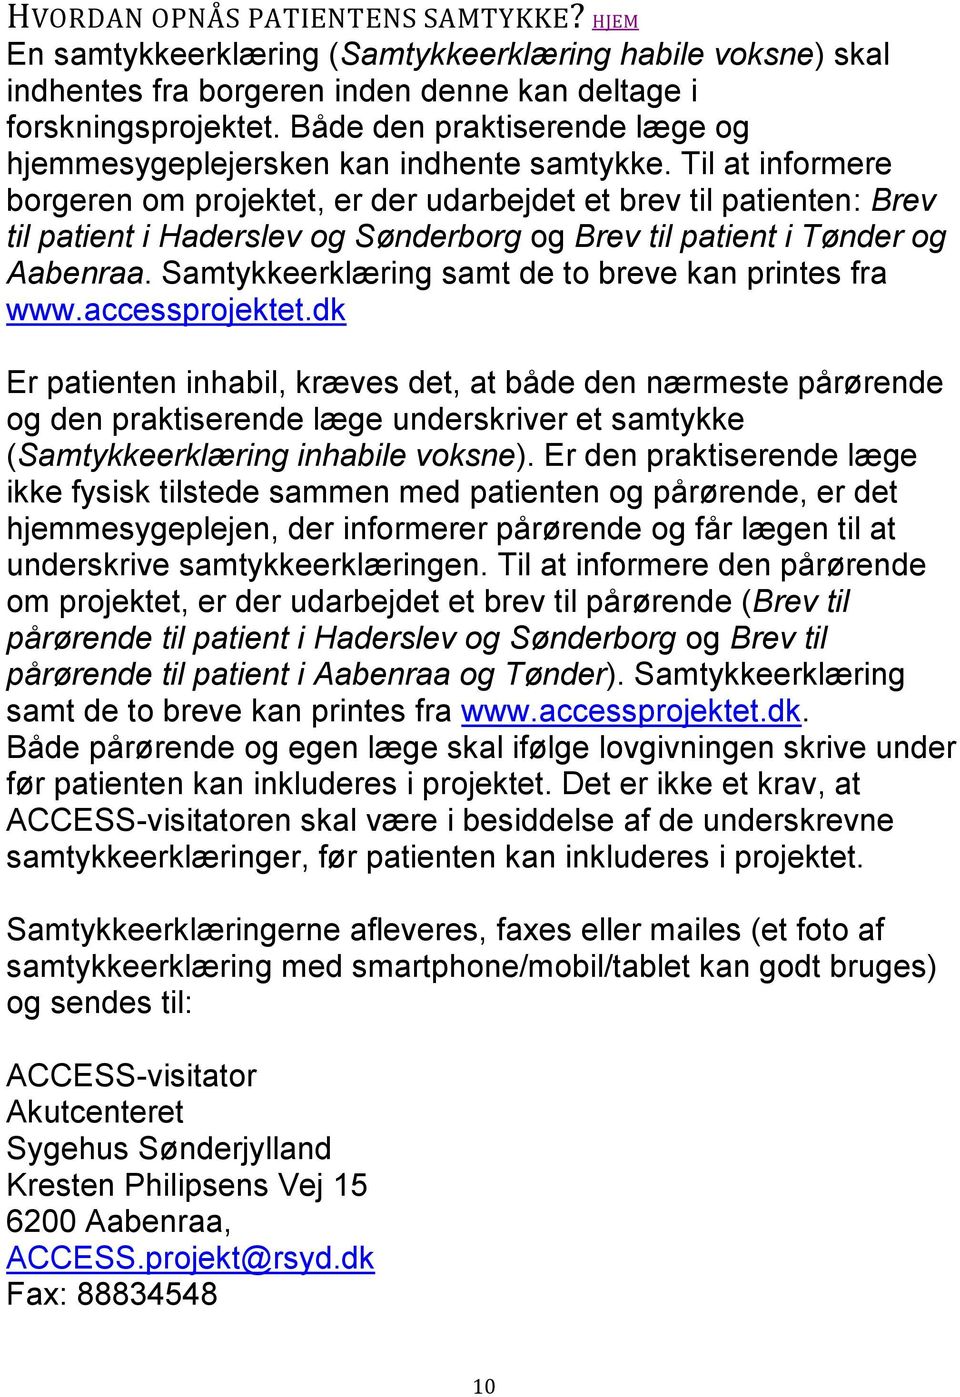 Til at informere borgeren om projektet, er der udarbejdet et brev til patienten: Brev til patient i Haderslev og Sønderborg og Brev til patient i Tønder og Aabenraa.